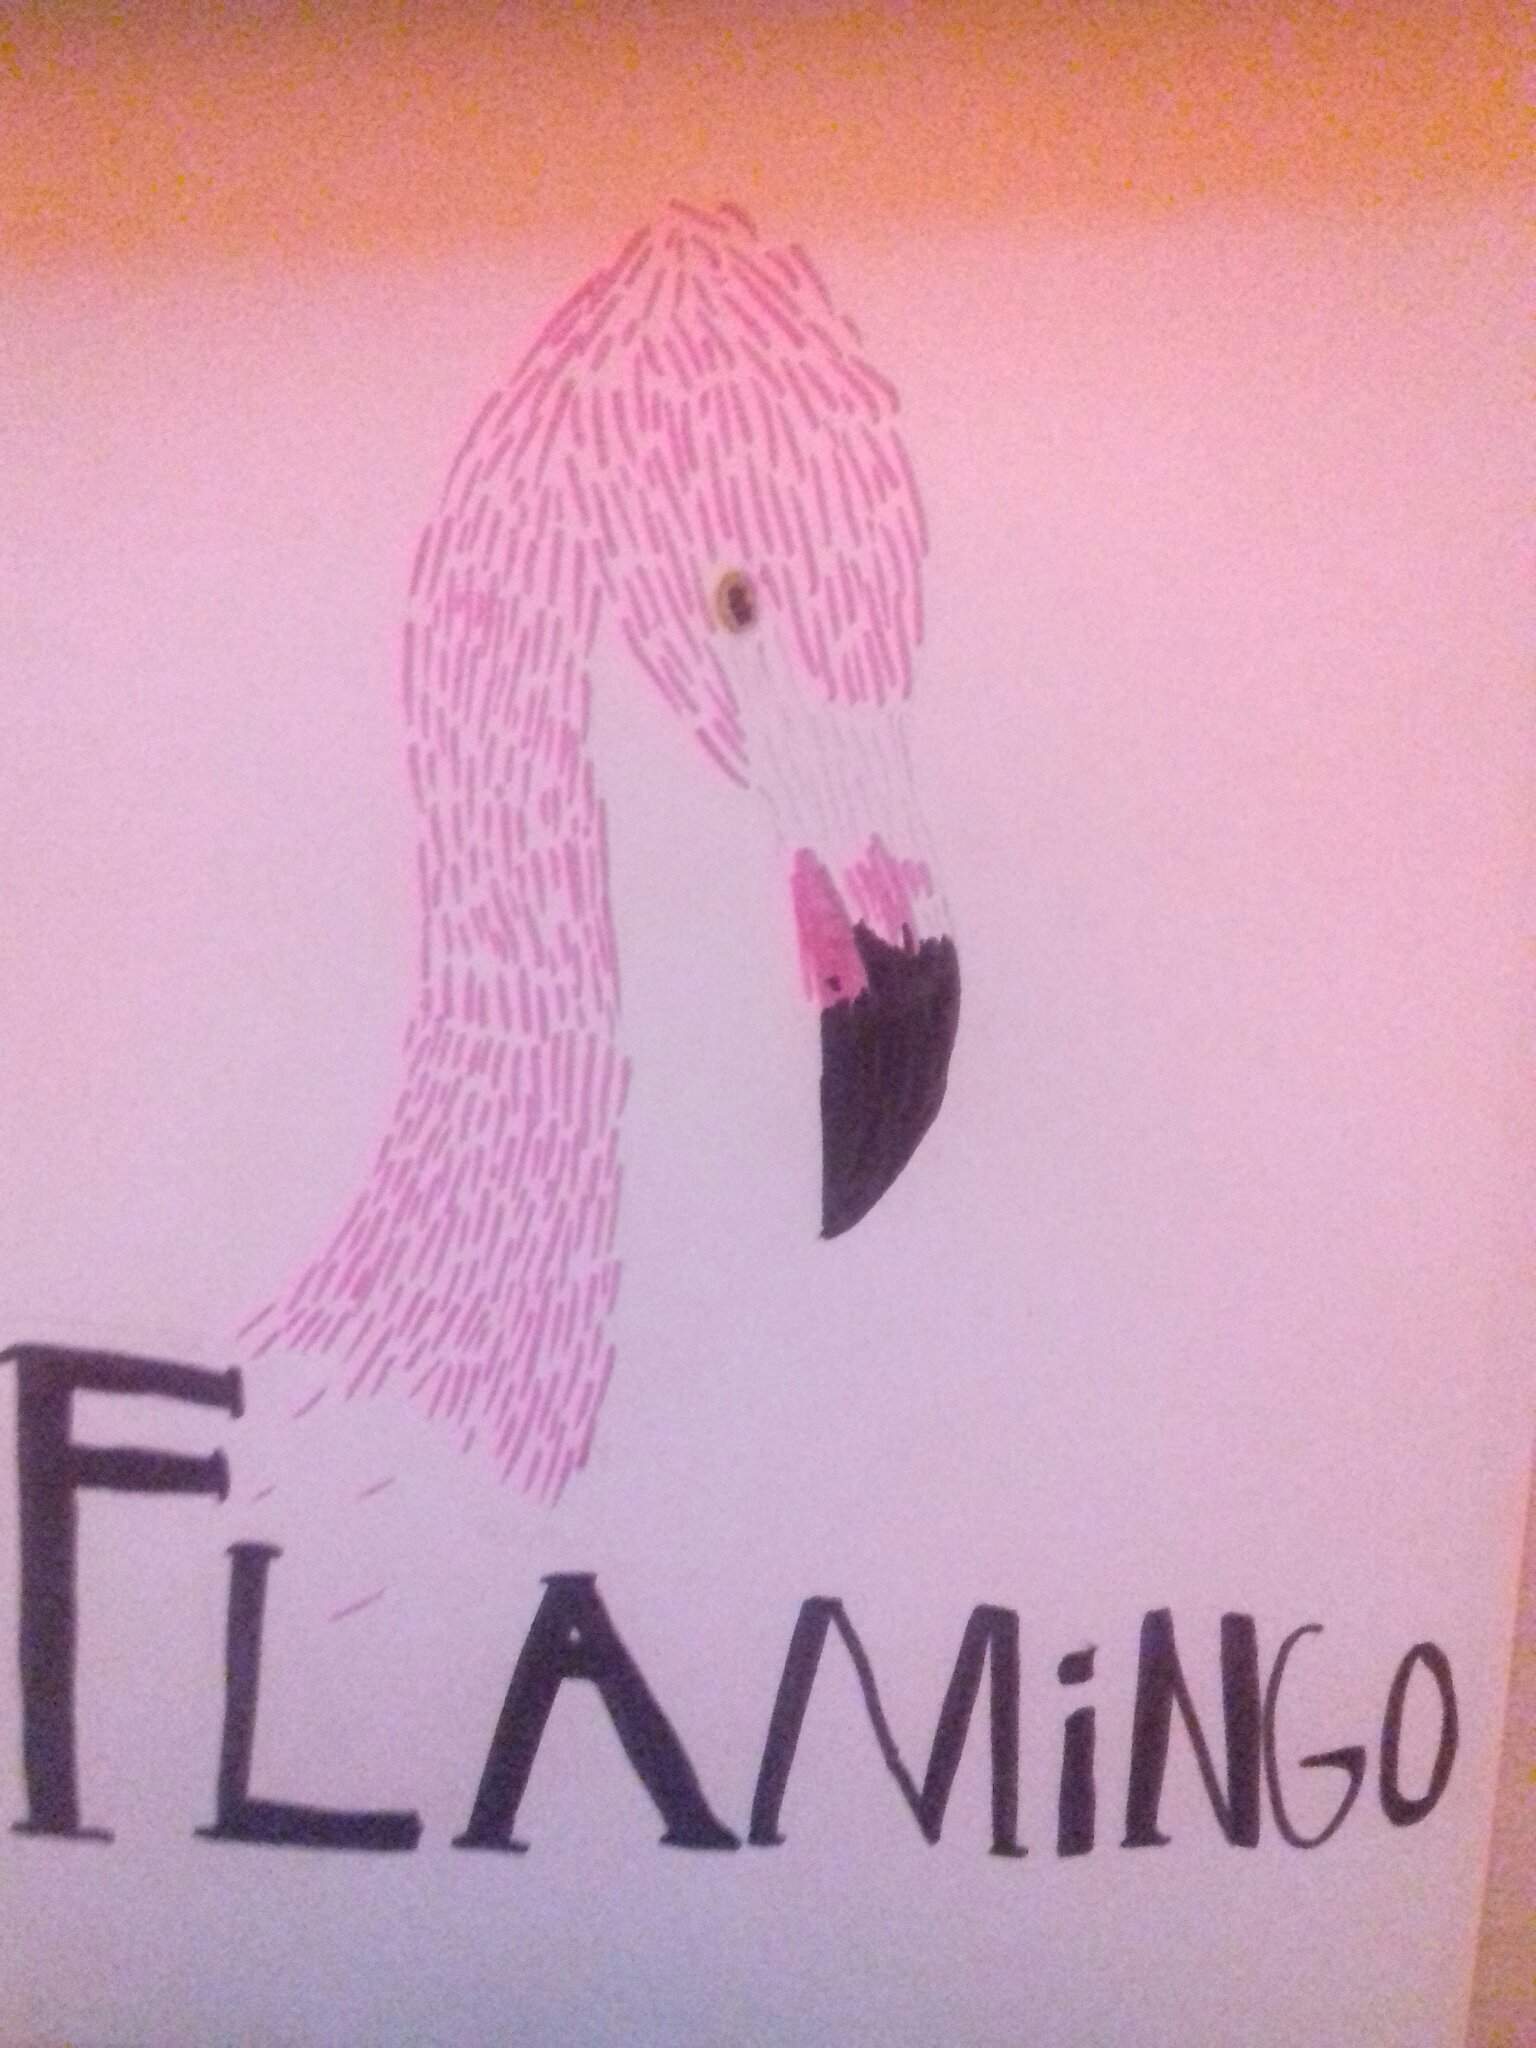 Albert Fanart Flamingo